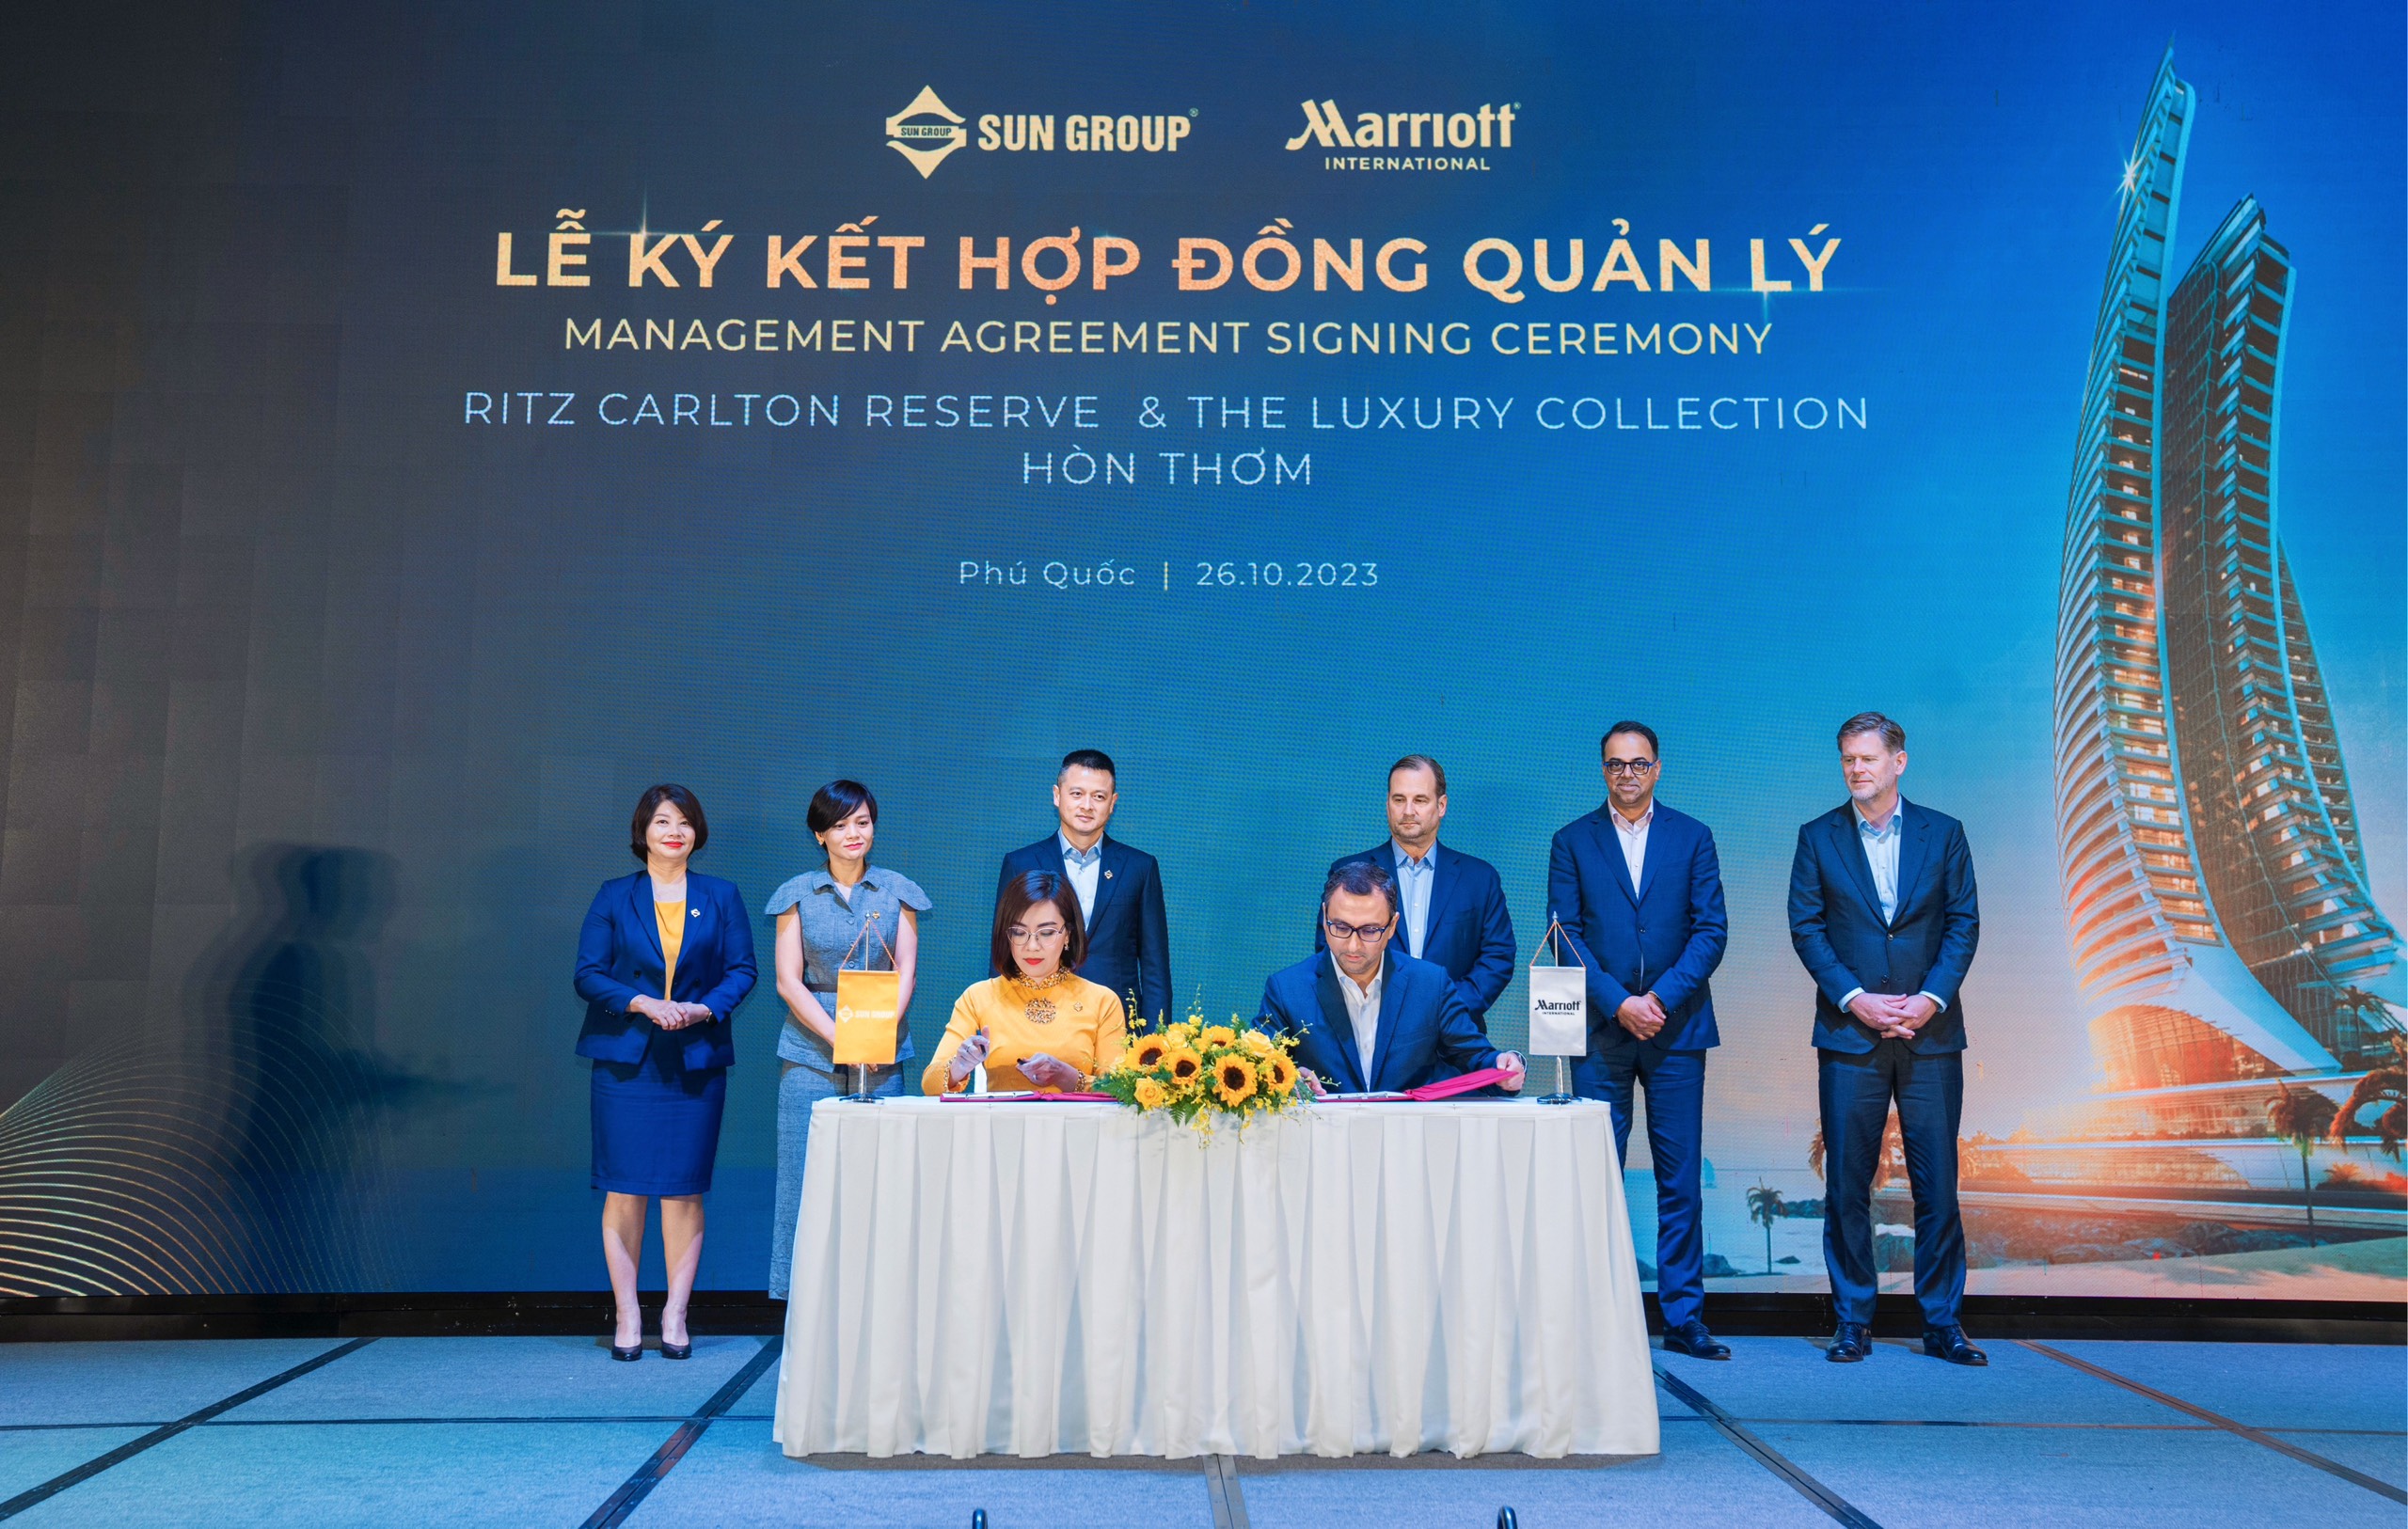 Sun Group cùng Marriott International chính thức ký kết quản lý 2 dự án nghỉ dưỡng cao cấp tại Hòn Thơm